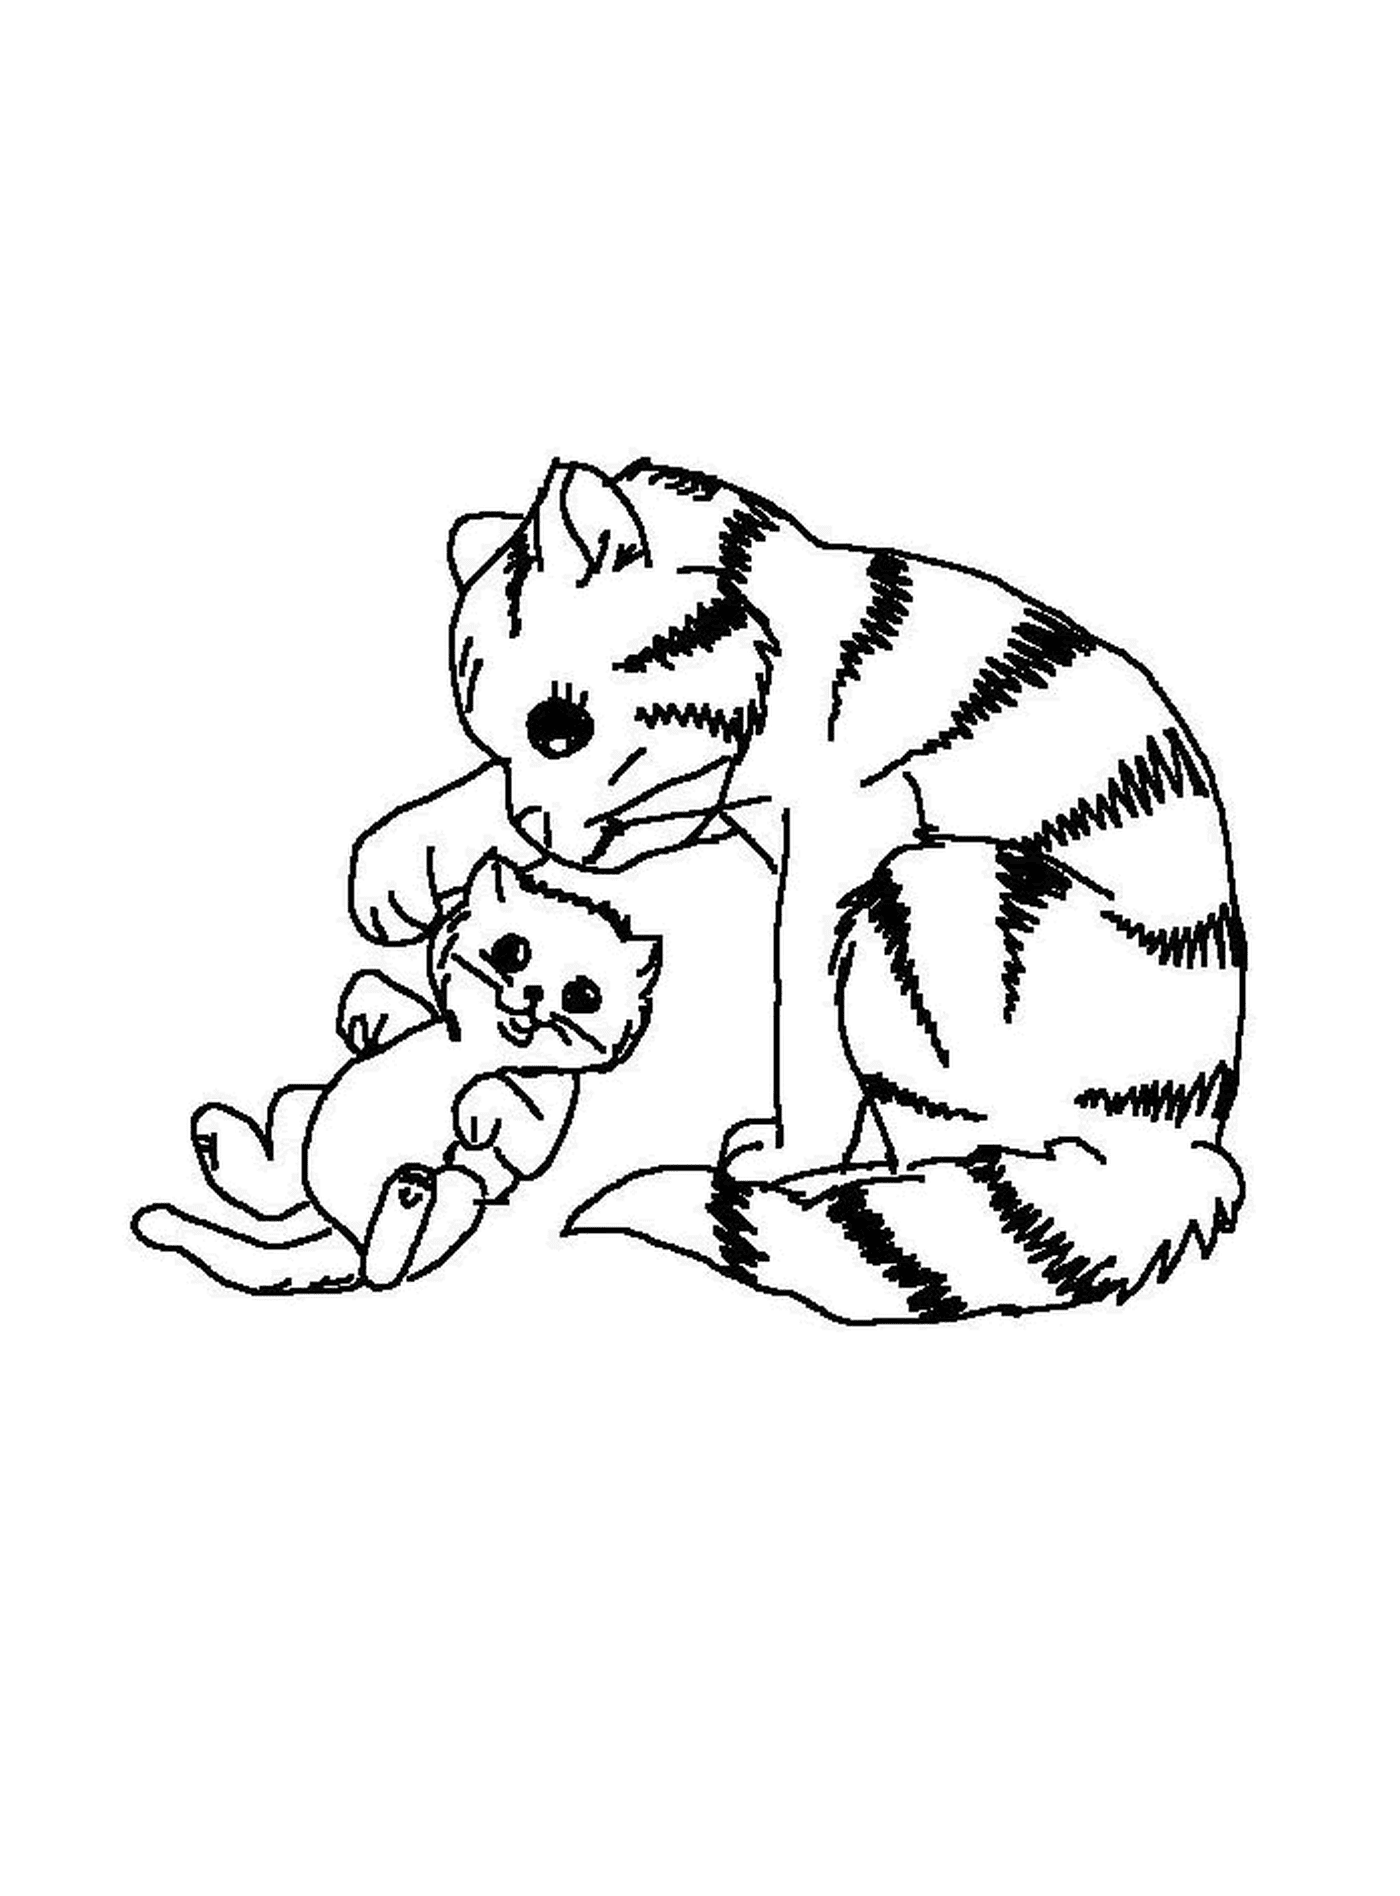   Un chat joue avec un chaton 